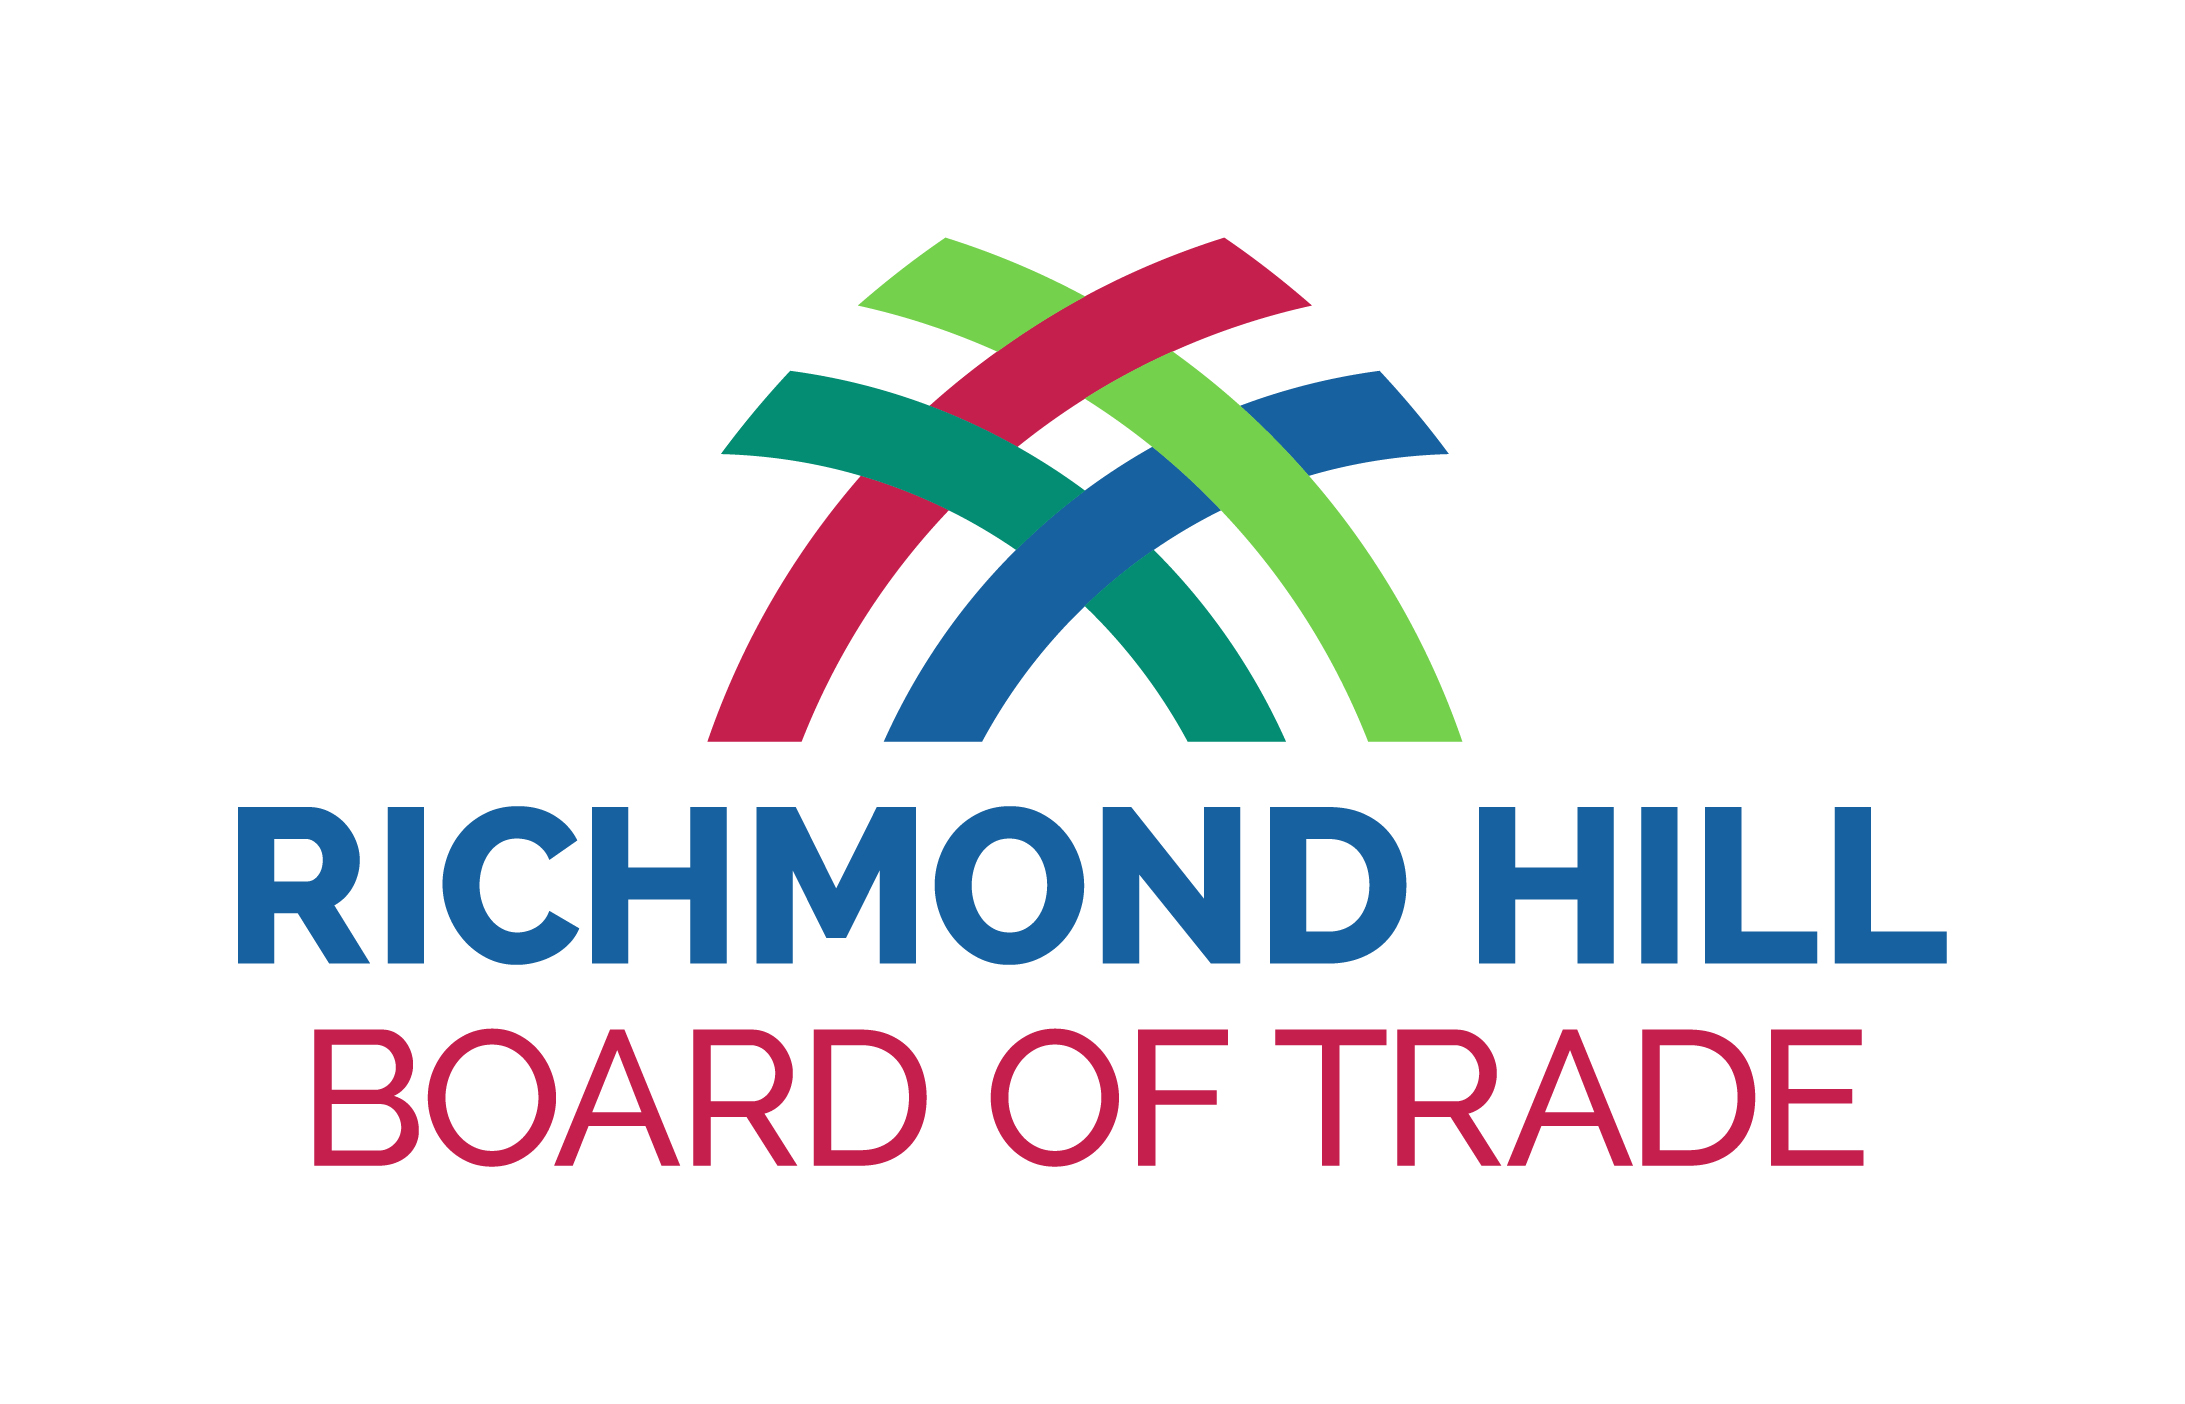 Richmond Hill Board of Trade